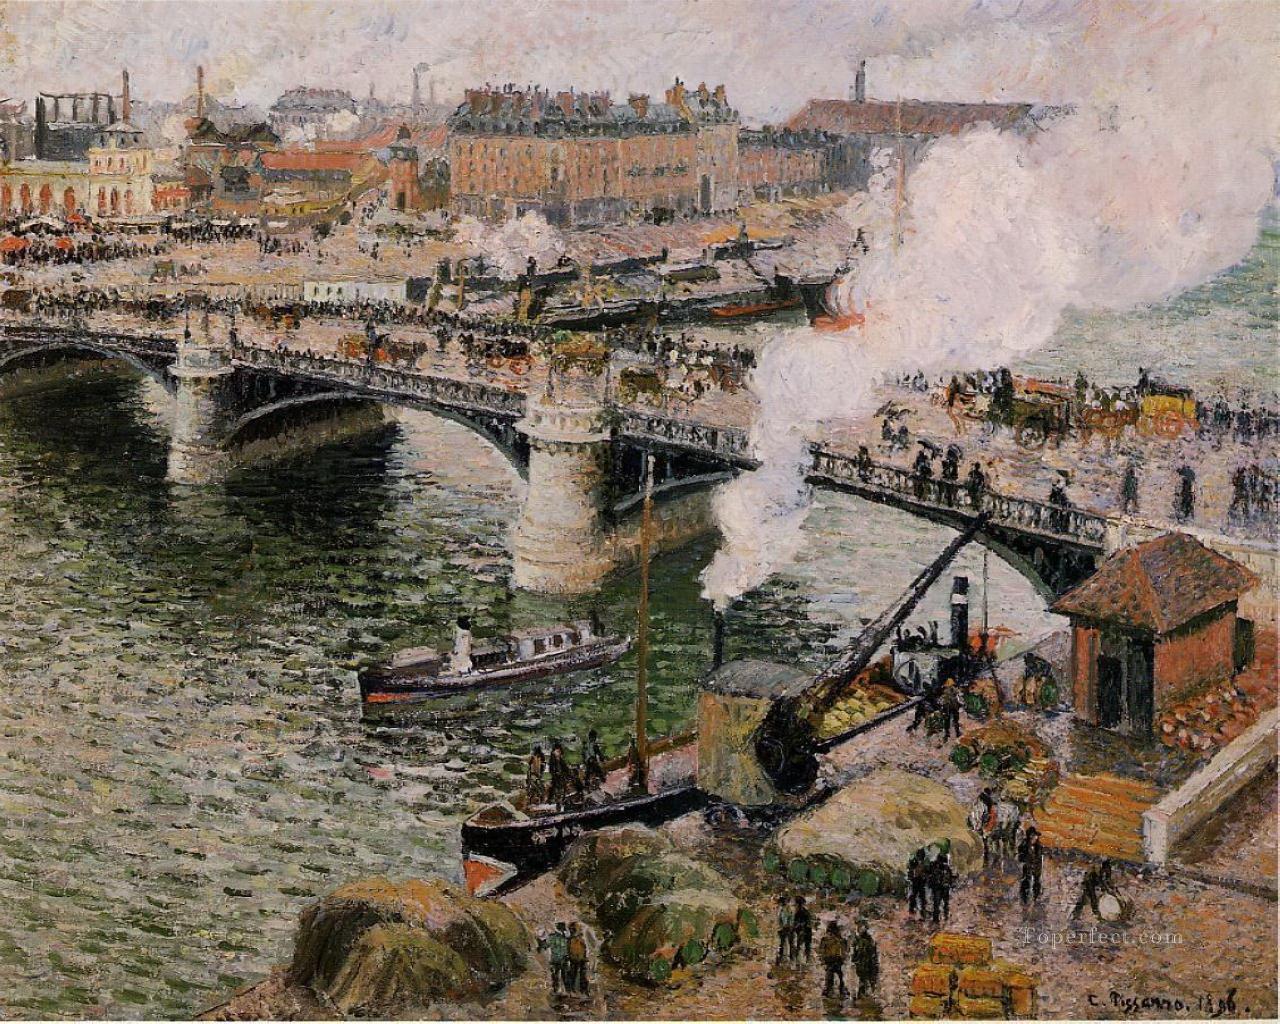 ボワデュー橋 ルーアンの湿った天気 1896年 カミーユ・ピサロ パリジャン油絵